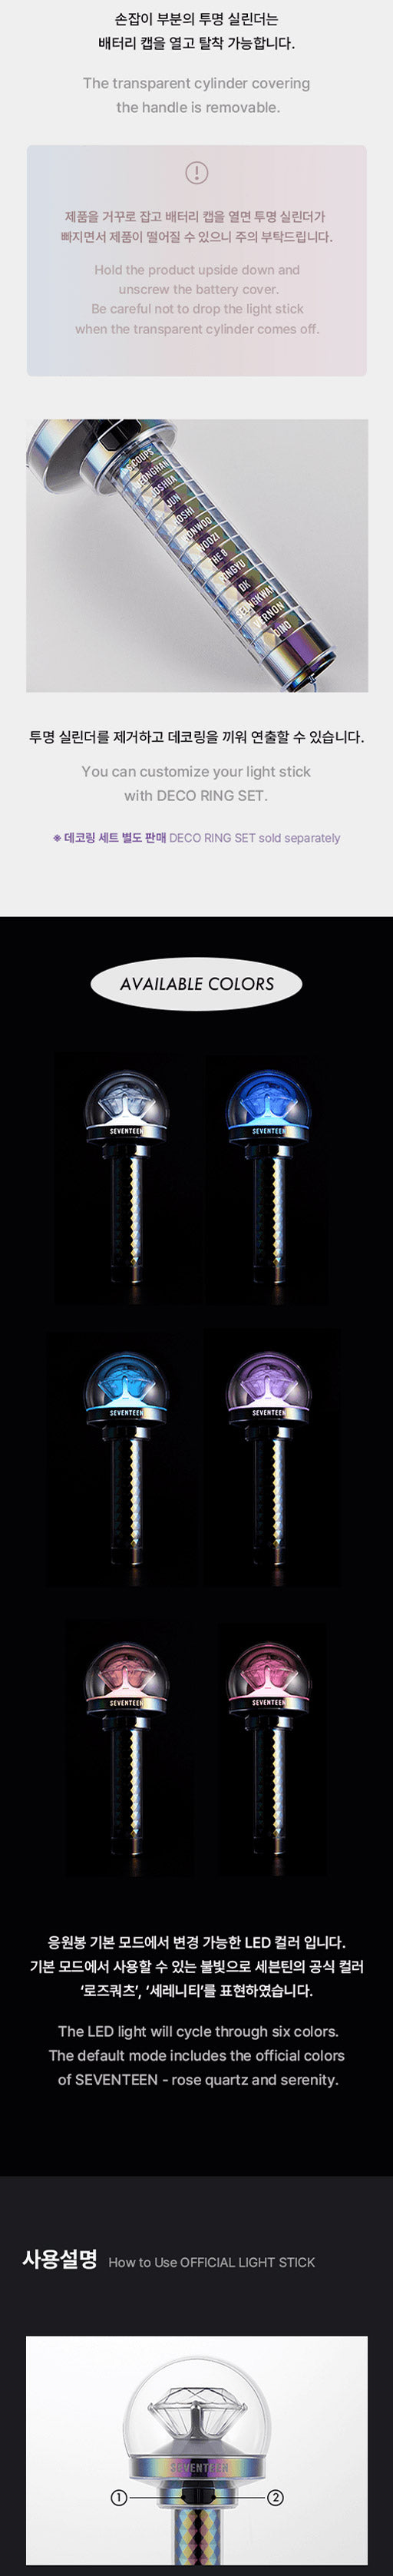 Details - SEVENTEEN Official Light stick ver.3